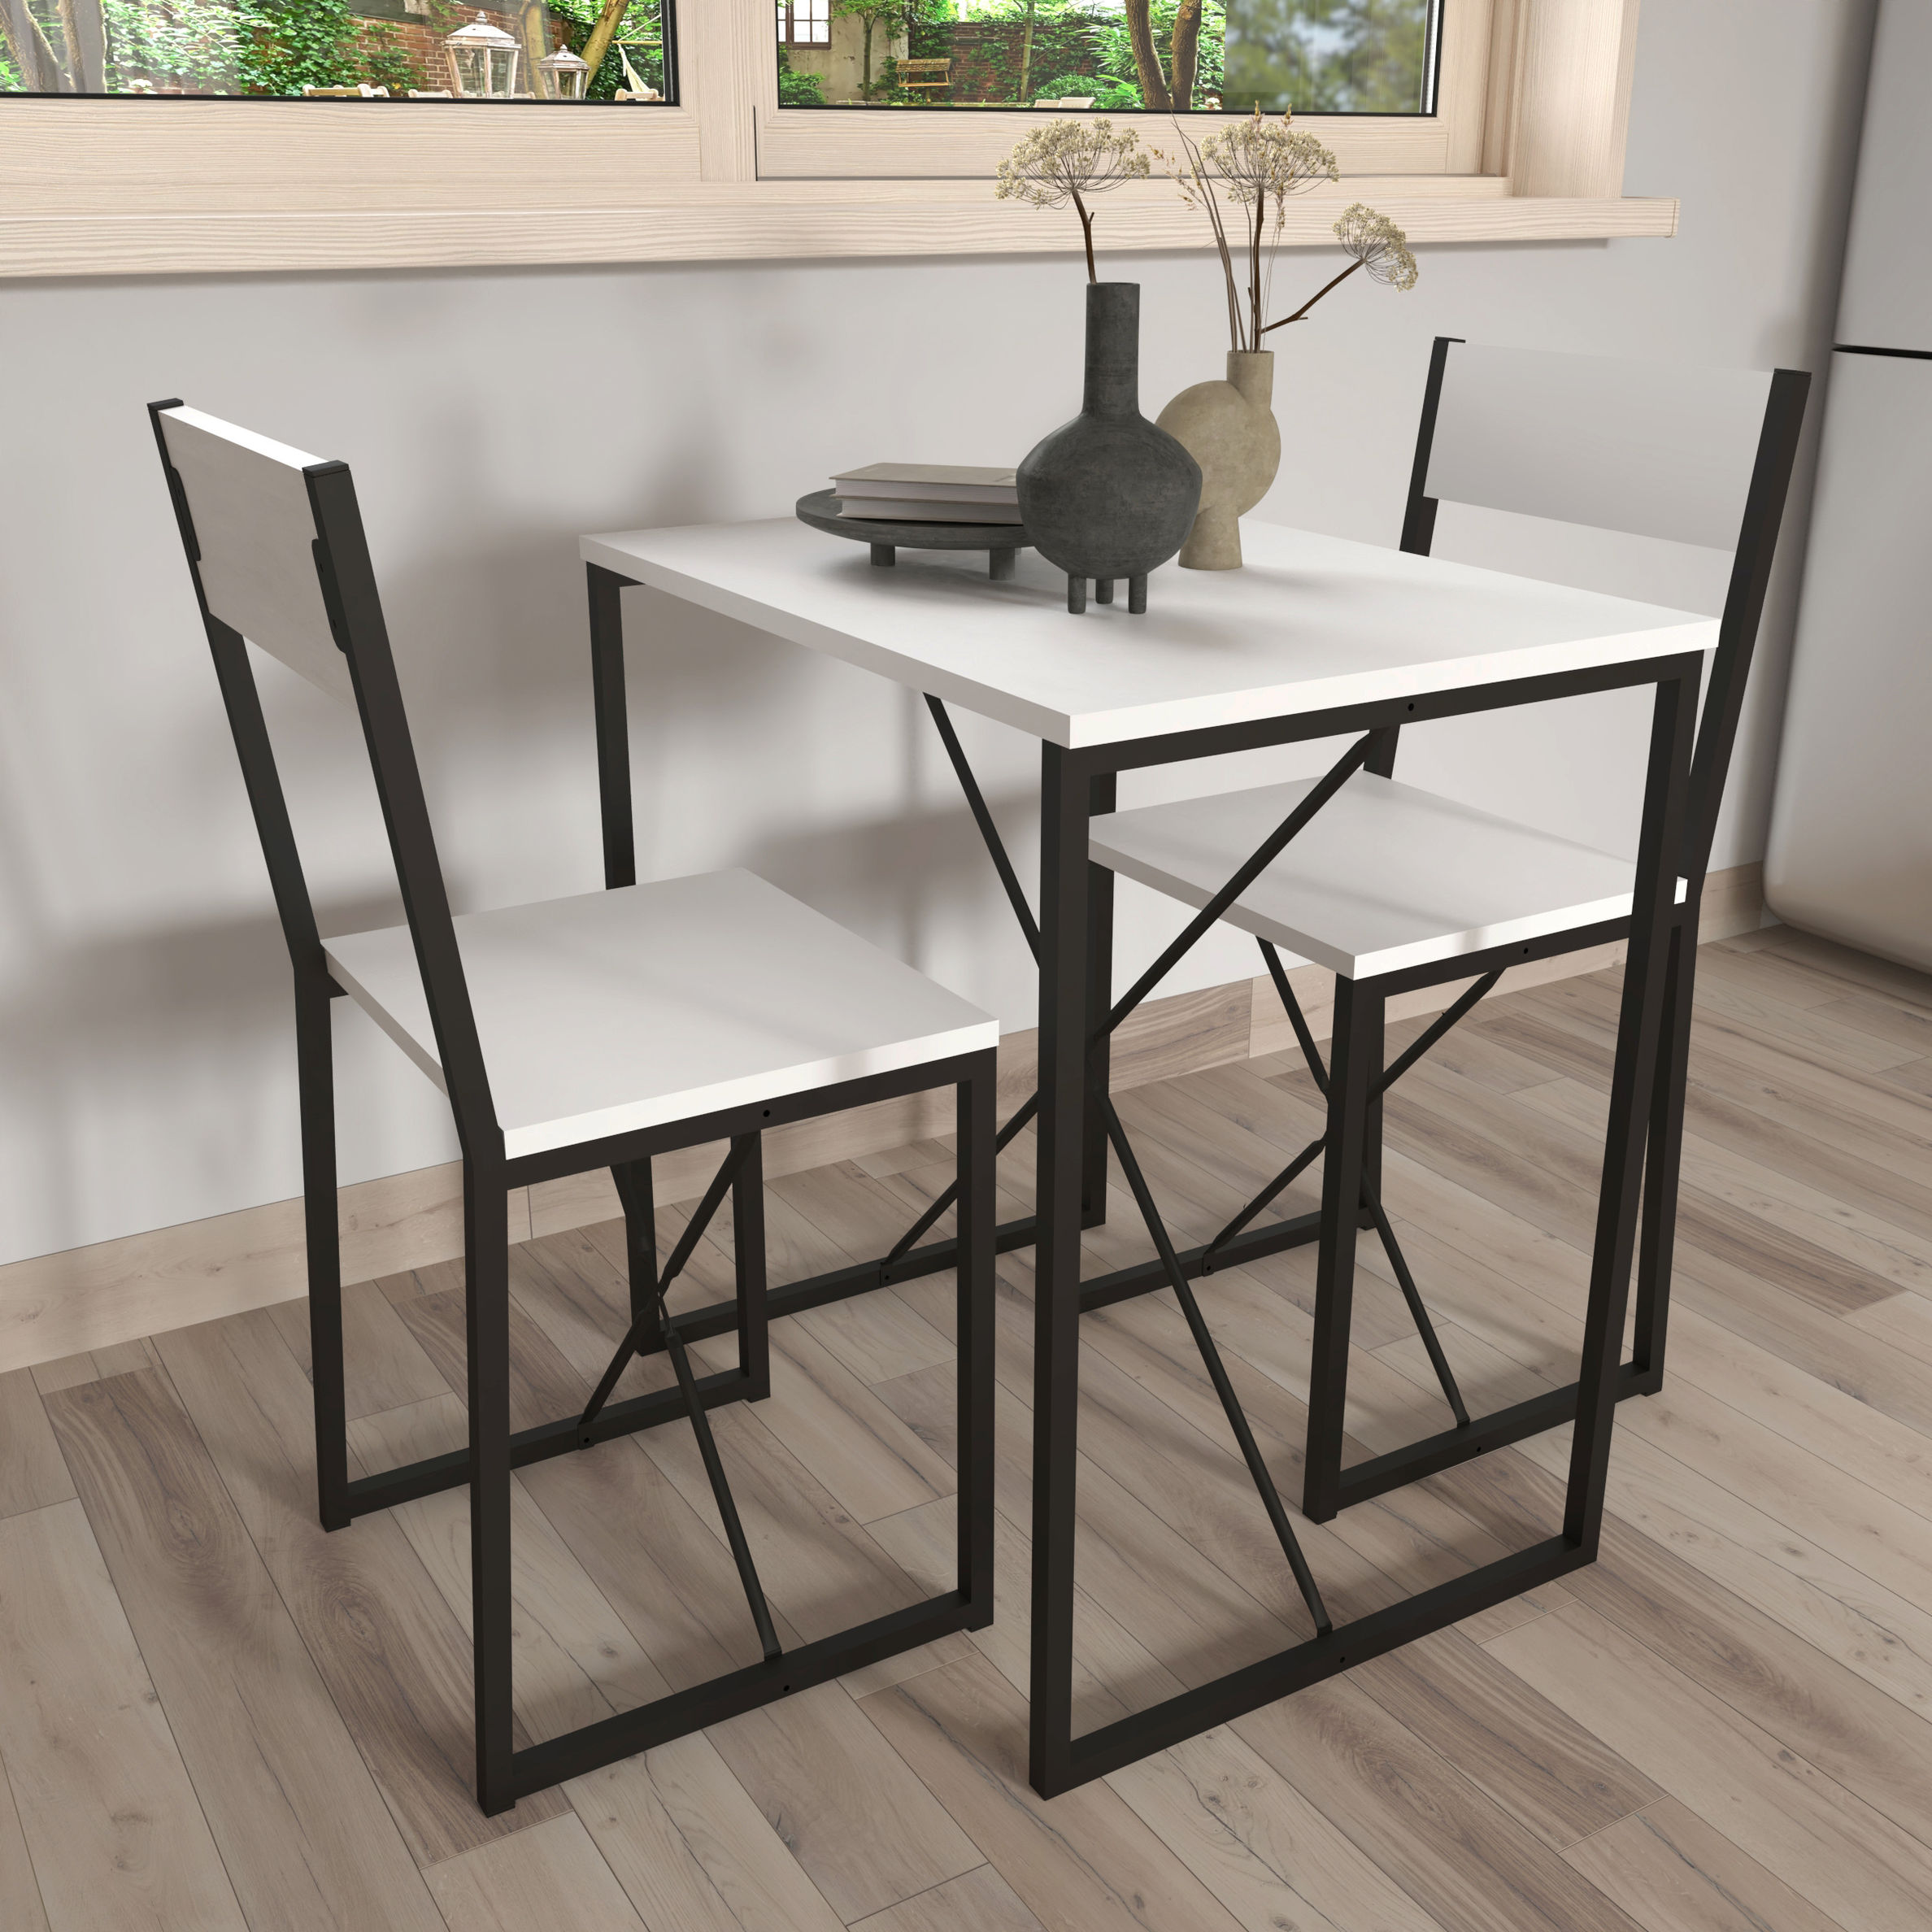 VCM 3-tlg. Holz Metall Essgruppe Küchentisch Esstisch Set Tischgruppe Tisch  Stühle Insasi M Farbe: Weiß | Weltbild.de